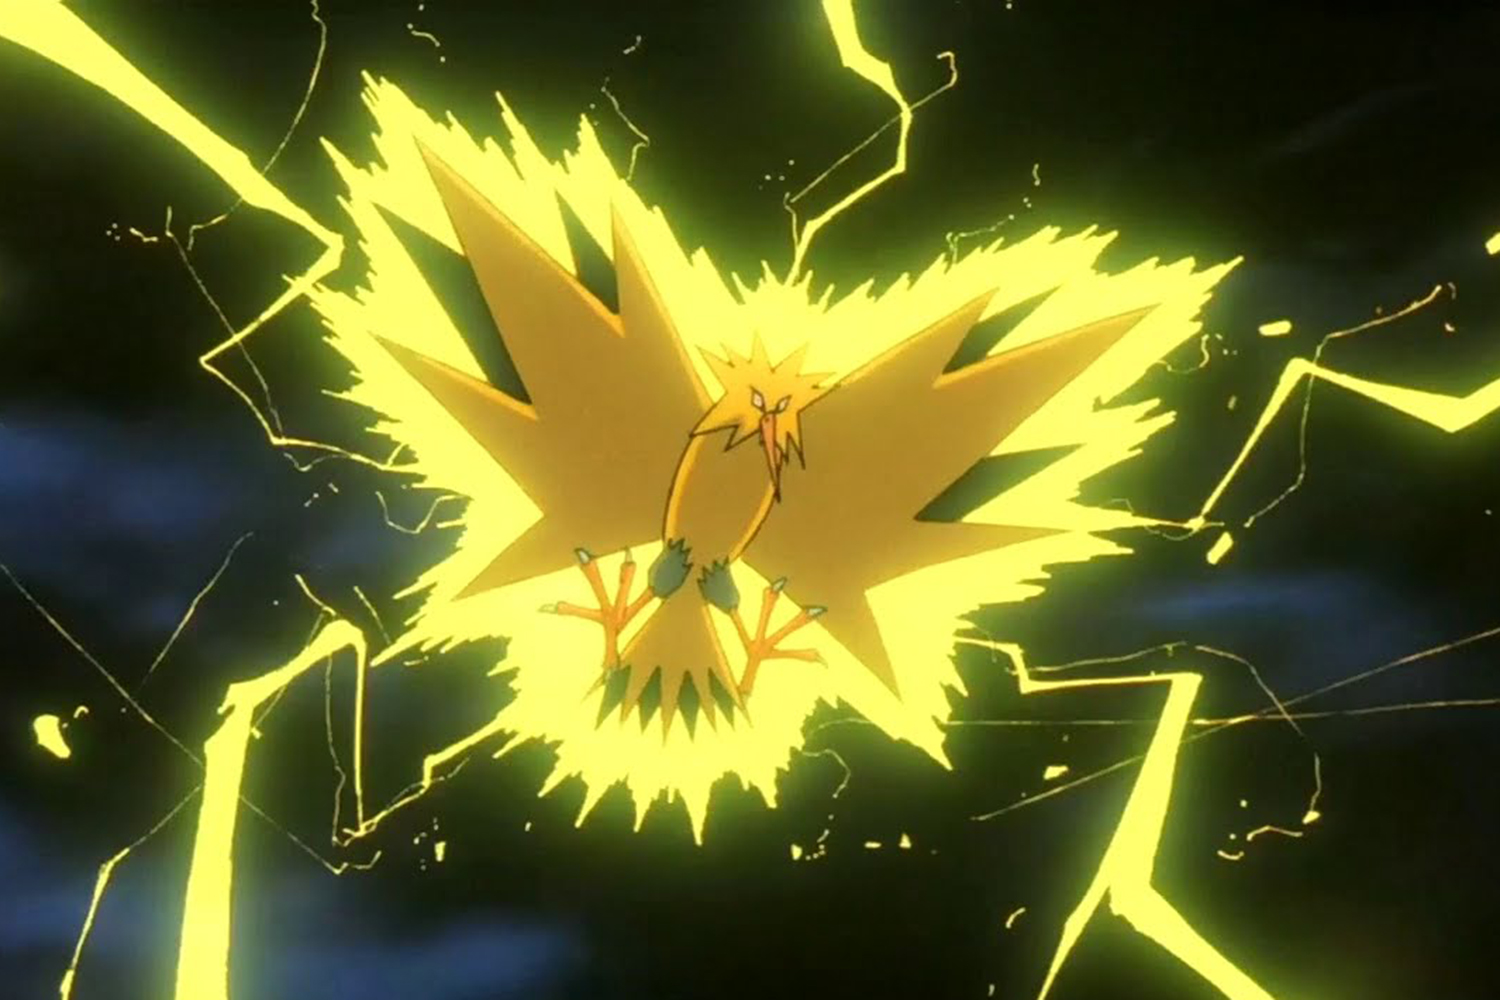 Pokémon Yellow - Legendary Pokémon